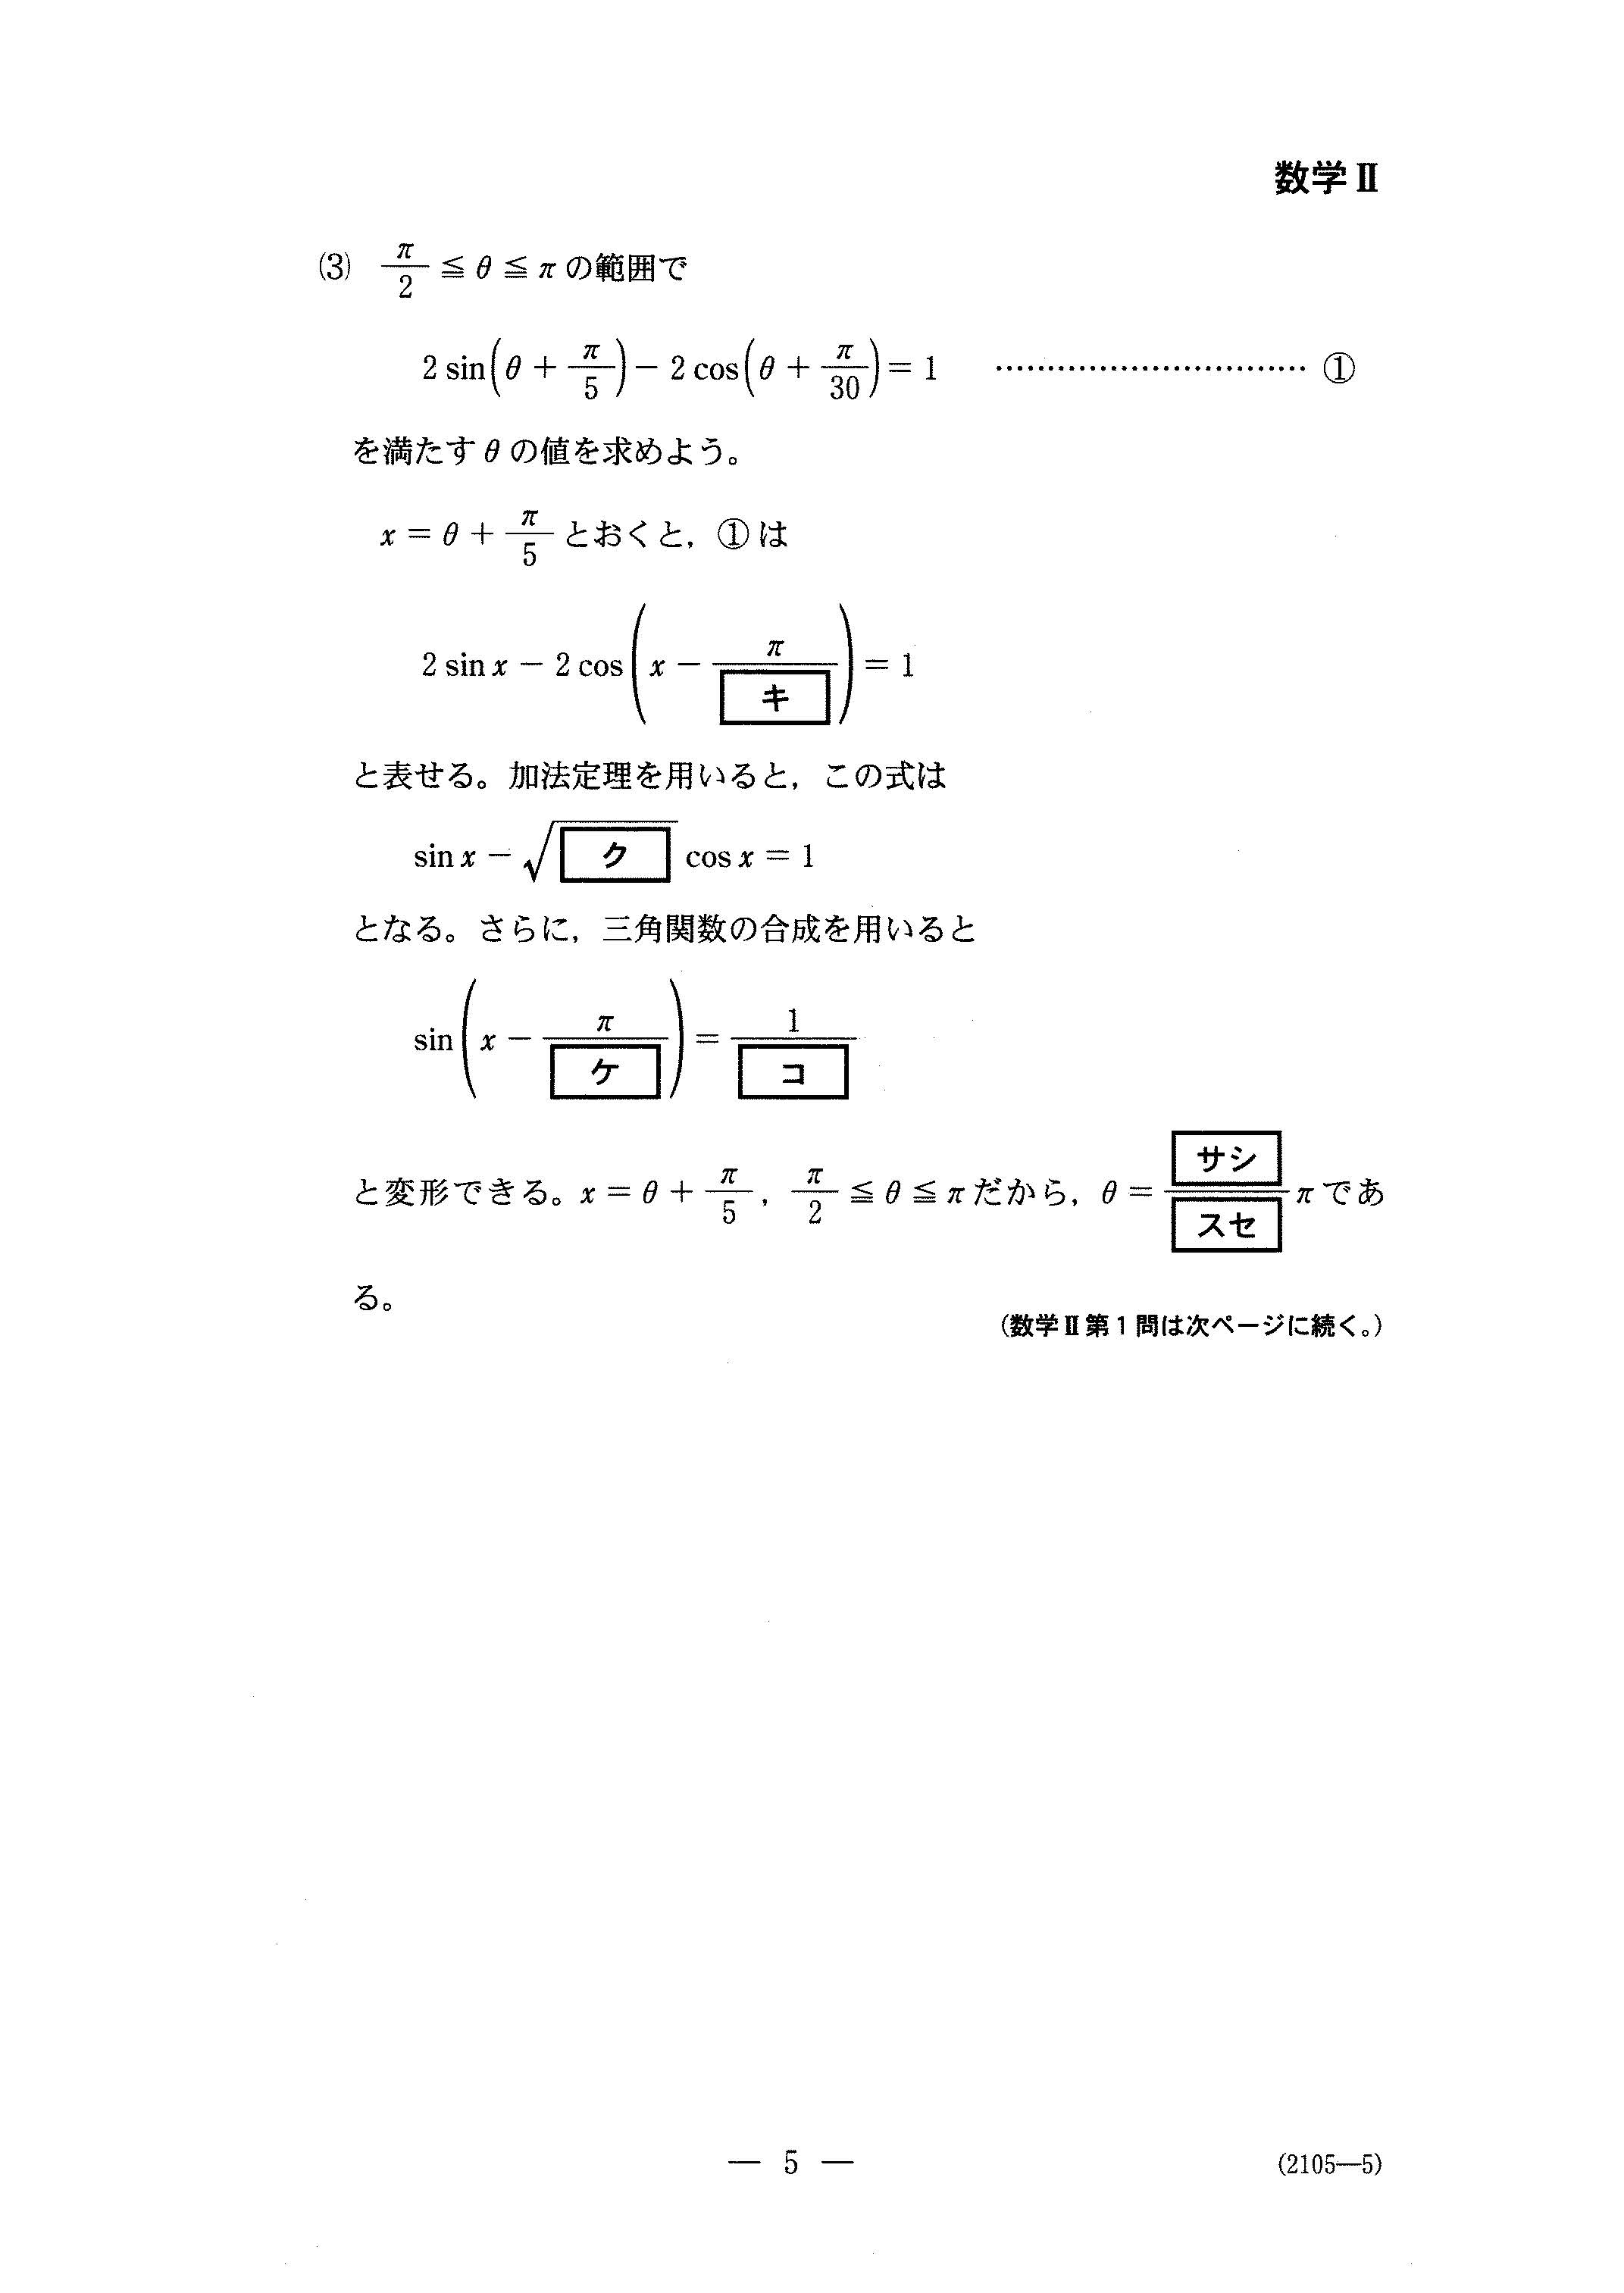 H30数学_数学Ⅱ 大学入試センター試験過去問